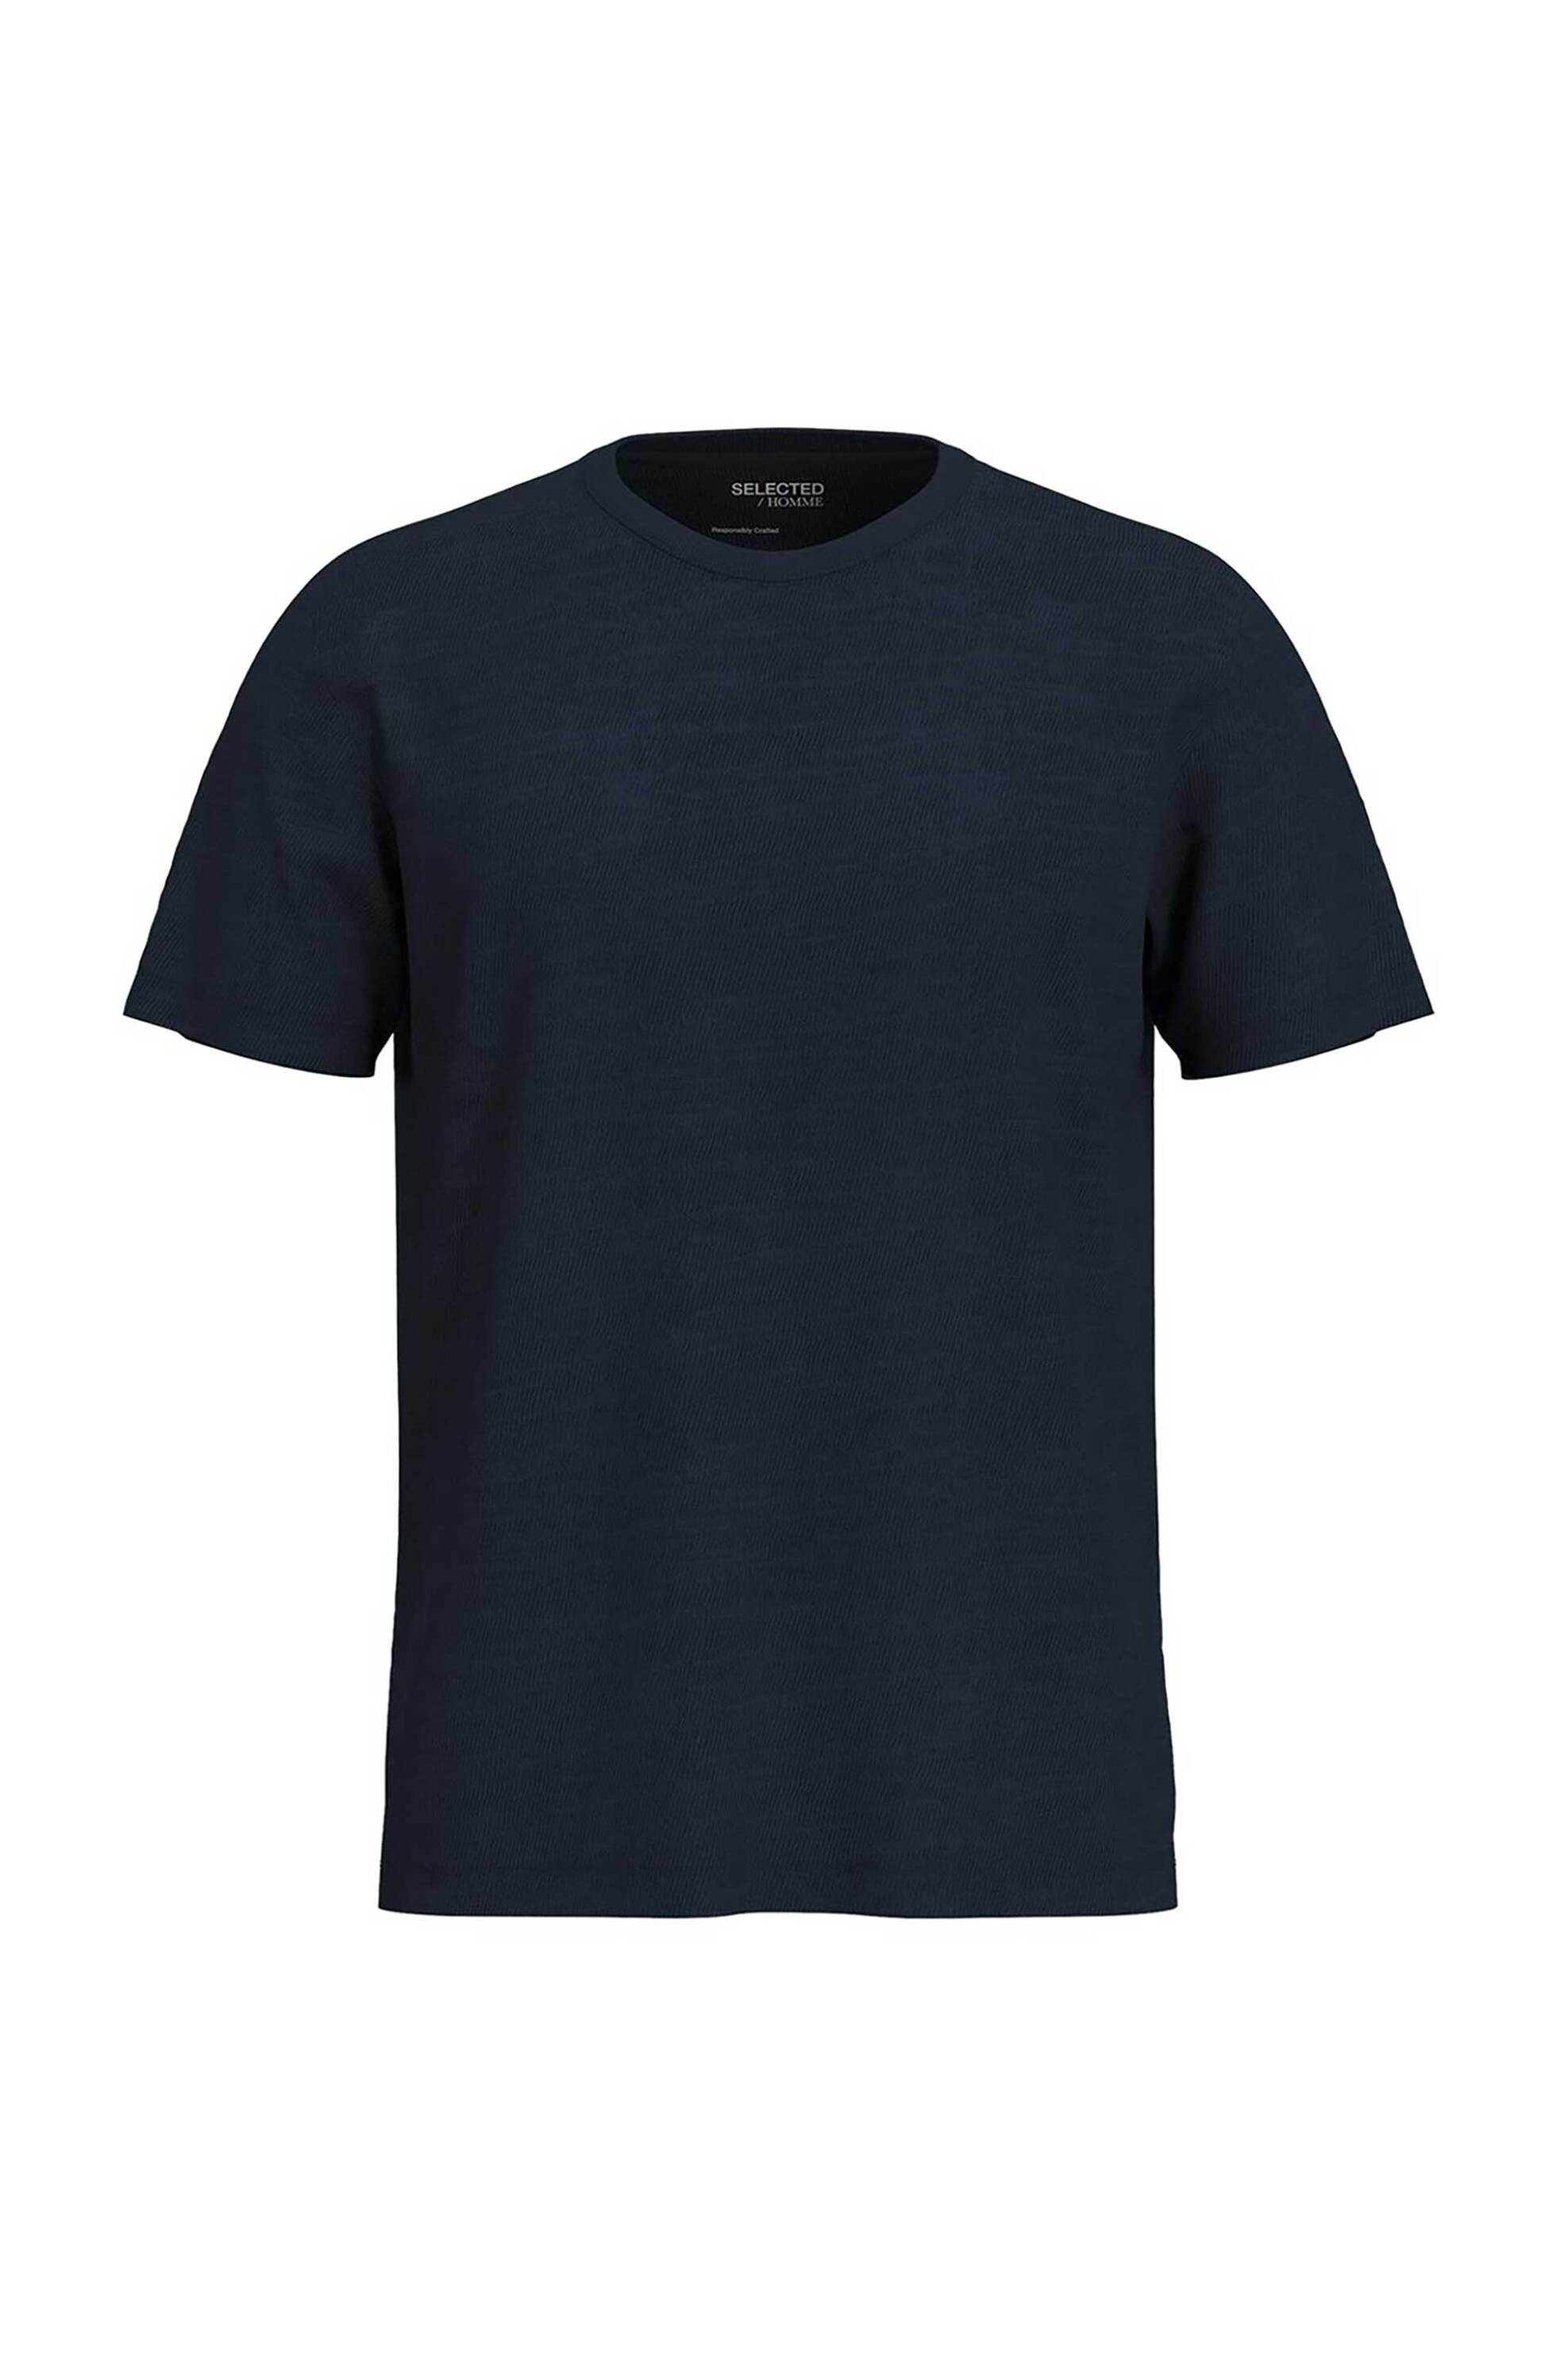 Ανδρική Μόδα > Ανδρικά Ρούχα > Ανδρικές Μπλούζες > Ανδρικά T-Shirts Selected ανδρικό T-shirt slub textured Regular Fit - 16092508 Μπλε Σκούρο